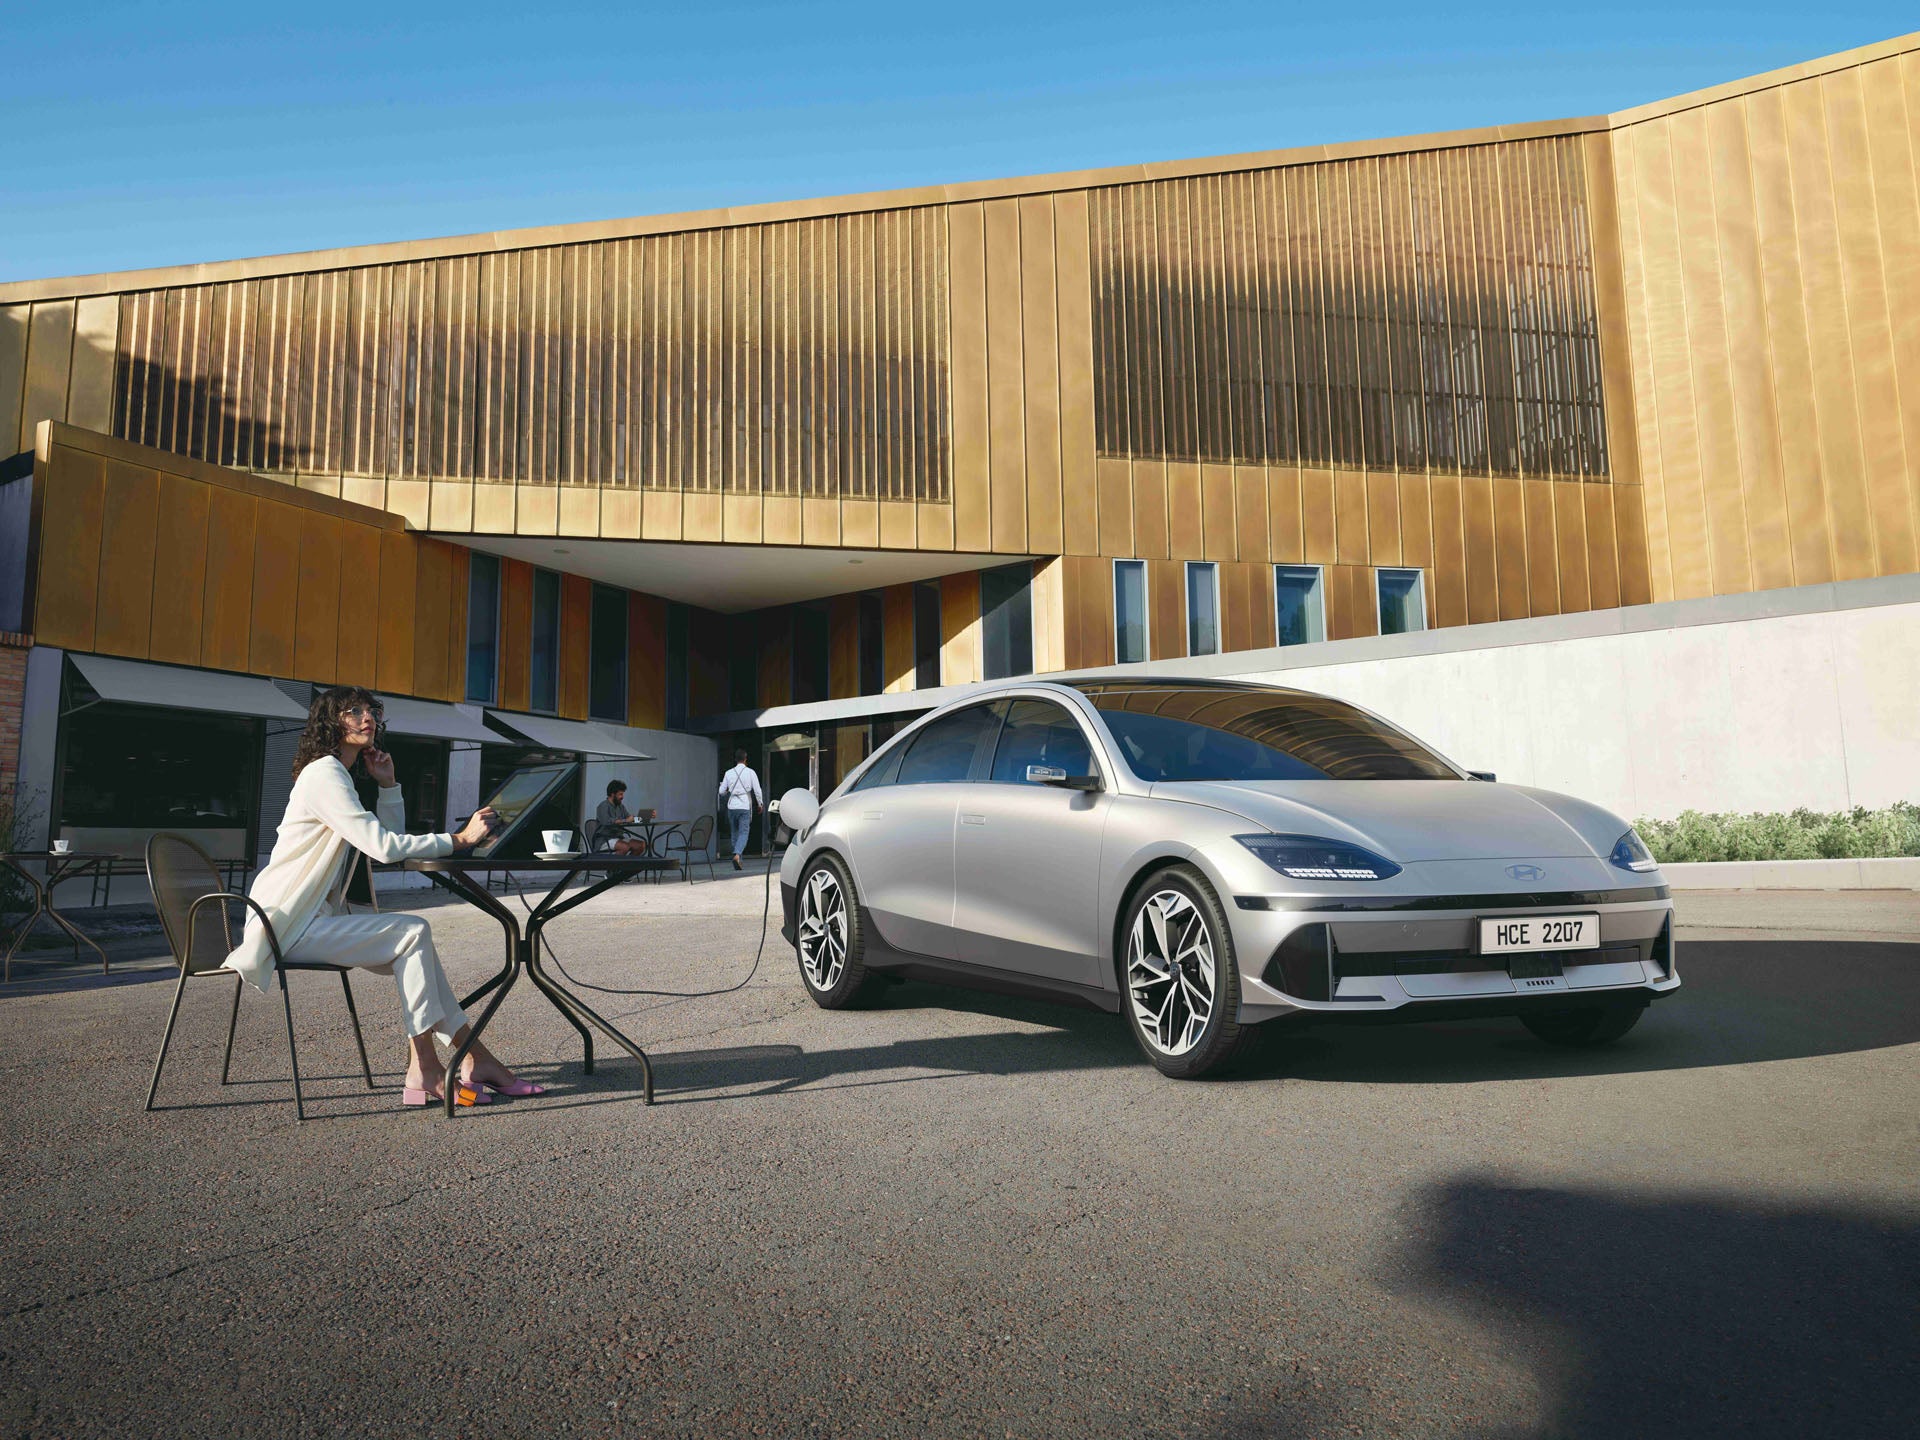 Hyundai Ioniq 6 Wraps Familiar Electric Power With Luxe-Ready Touches